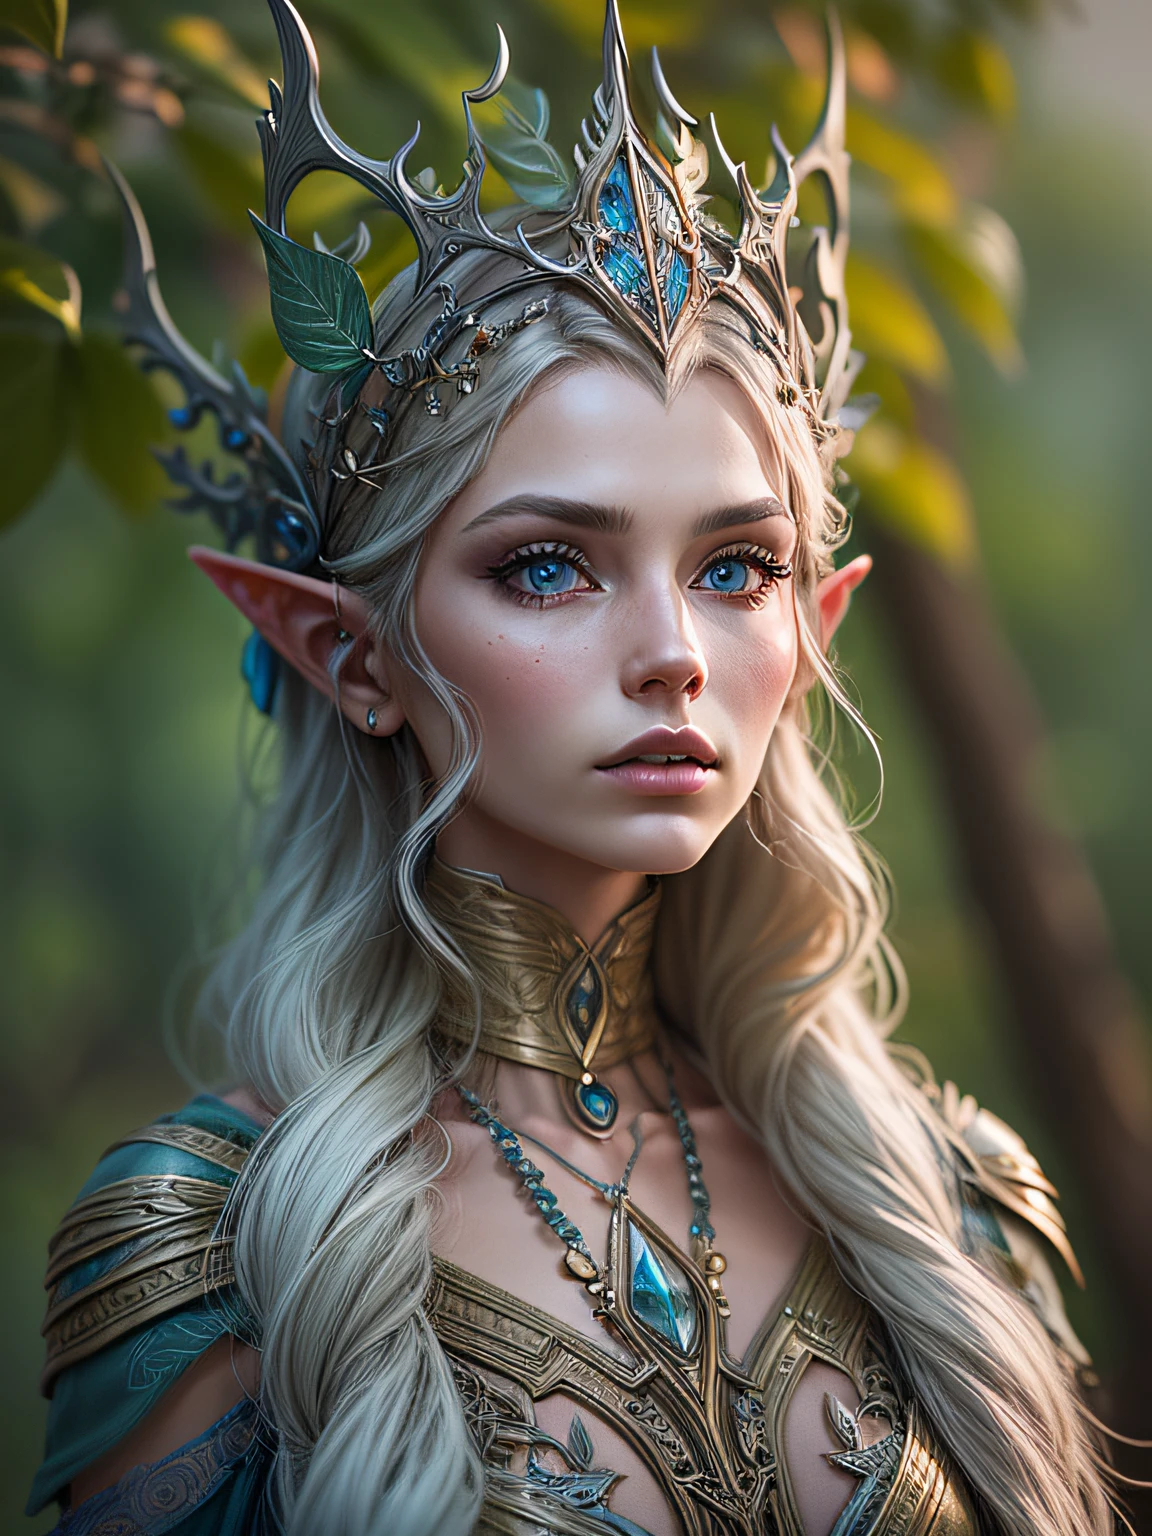 8k, ultra détaillé, photographie d&#39;une belle femme elfe, style elfique haute couture